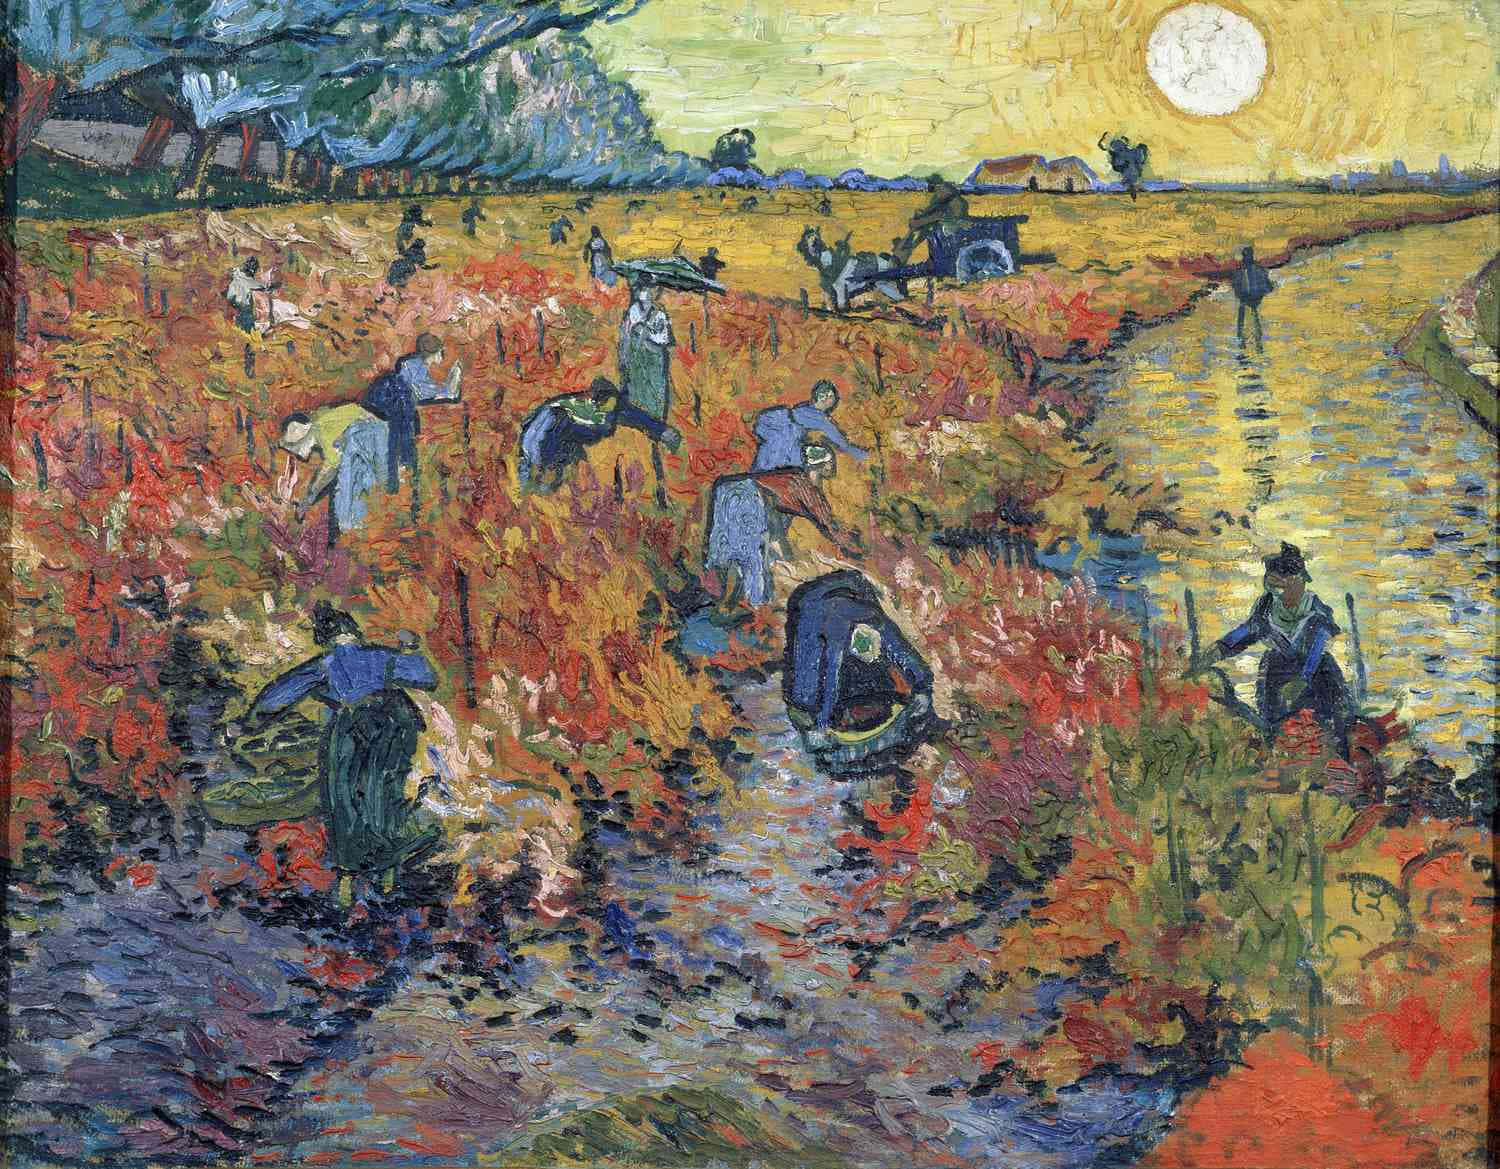 Einefarbenfrohe Mondbeleuchtete Nacht, Wie Von Vincent Van Gogh Beschrieben.